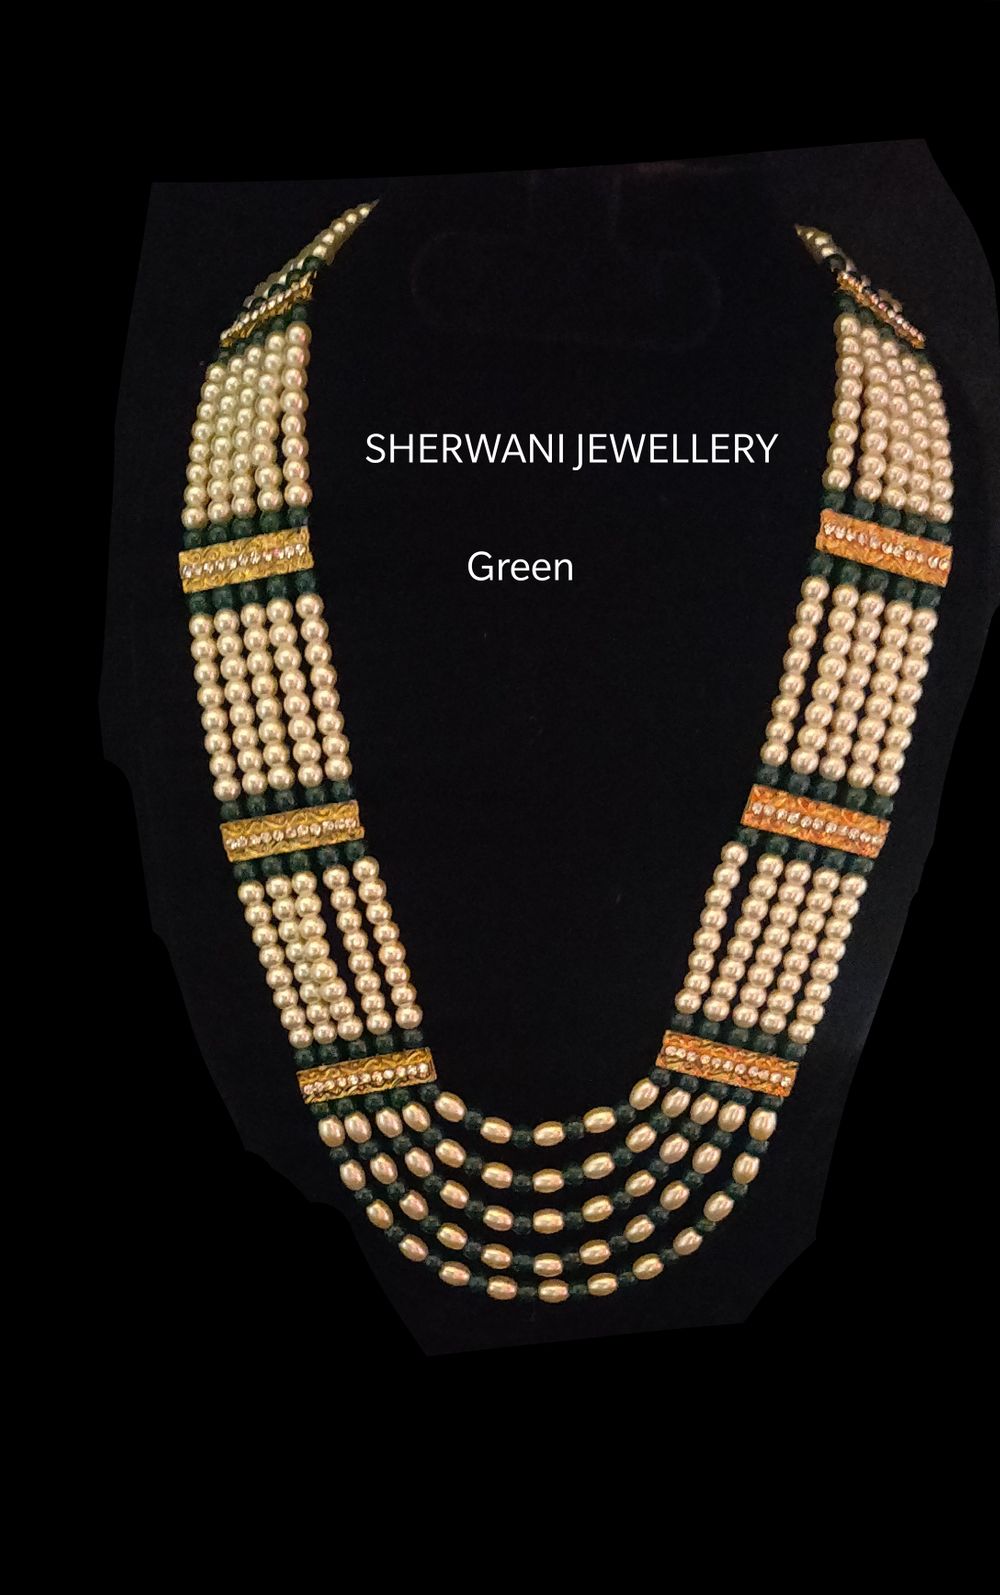 Photo From SHERWANI JEWELLERY - By Mahila Pasand Bridal Jewellery